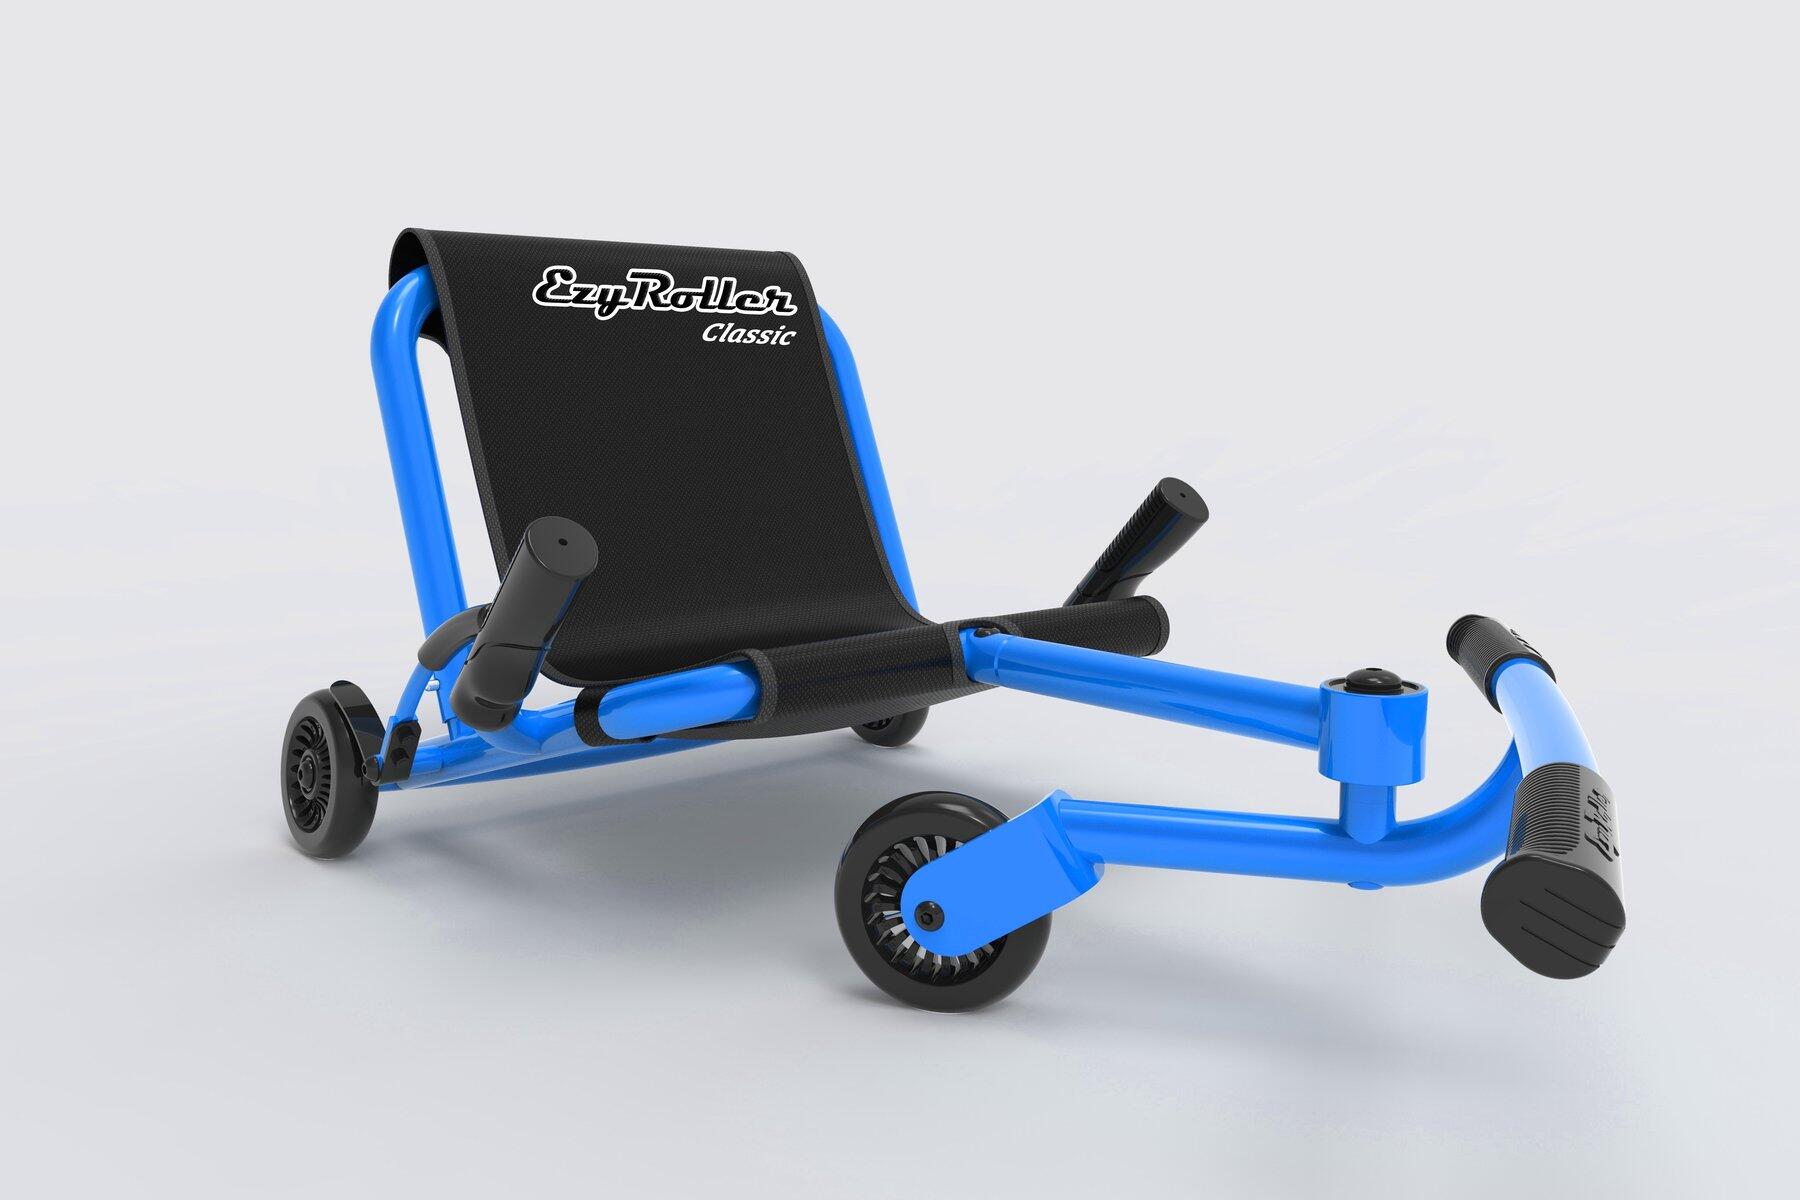 Ezy Roller Classic Kids Kart Trike Weave Ride On - Blue 1/6